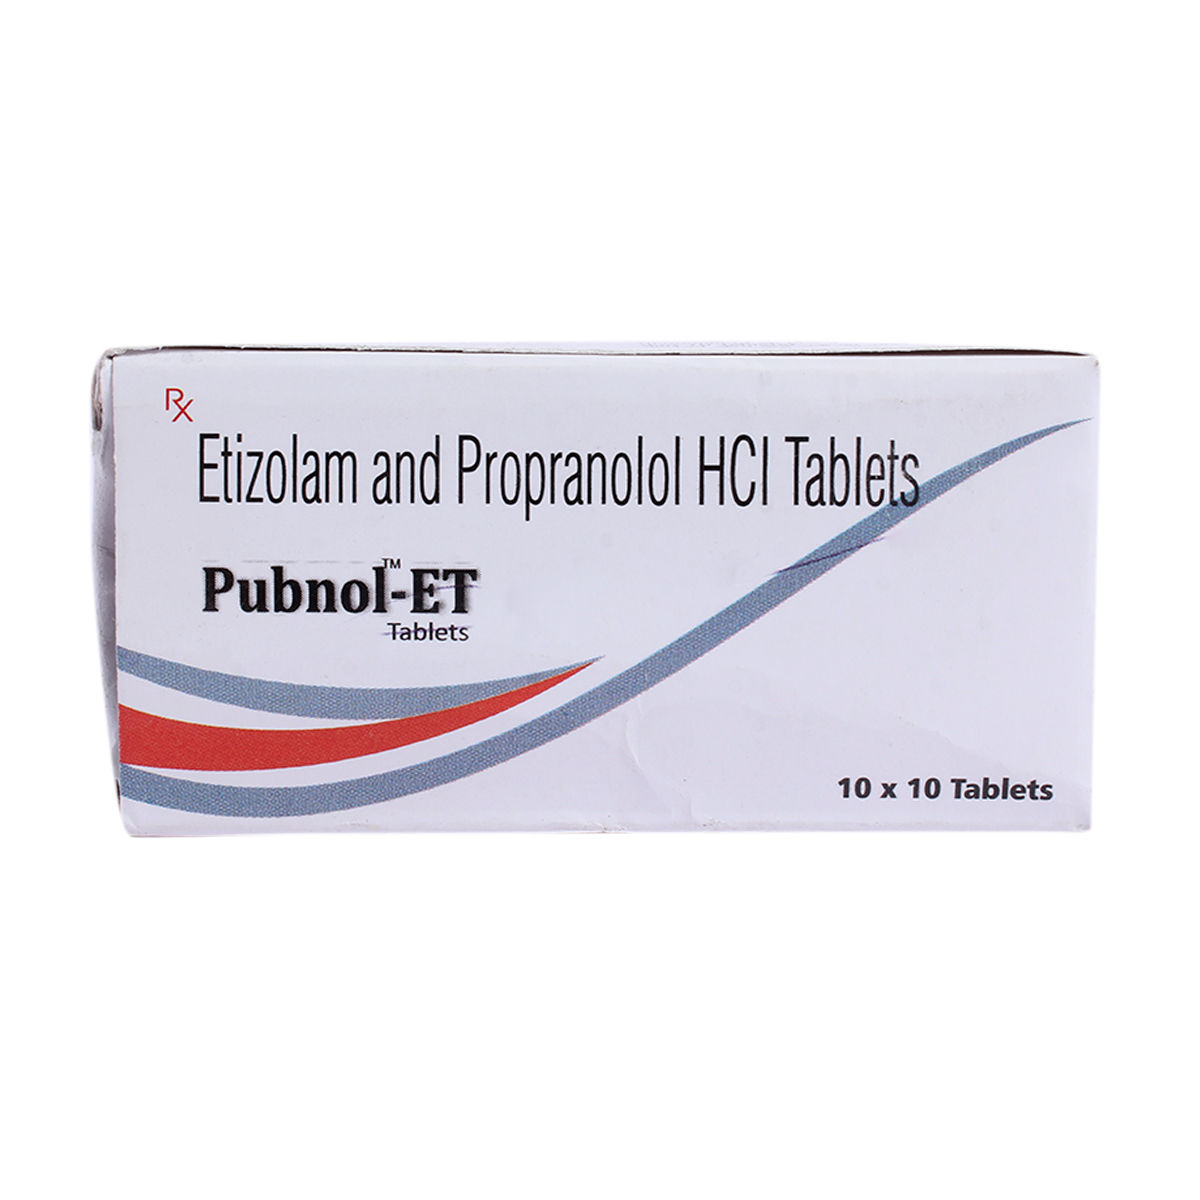 Pubnol-ET Tablet 10's, Pack of 10 TABLETS